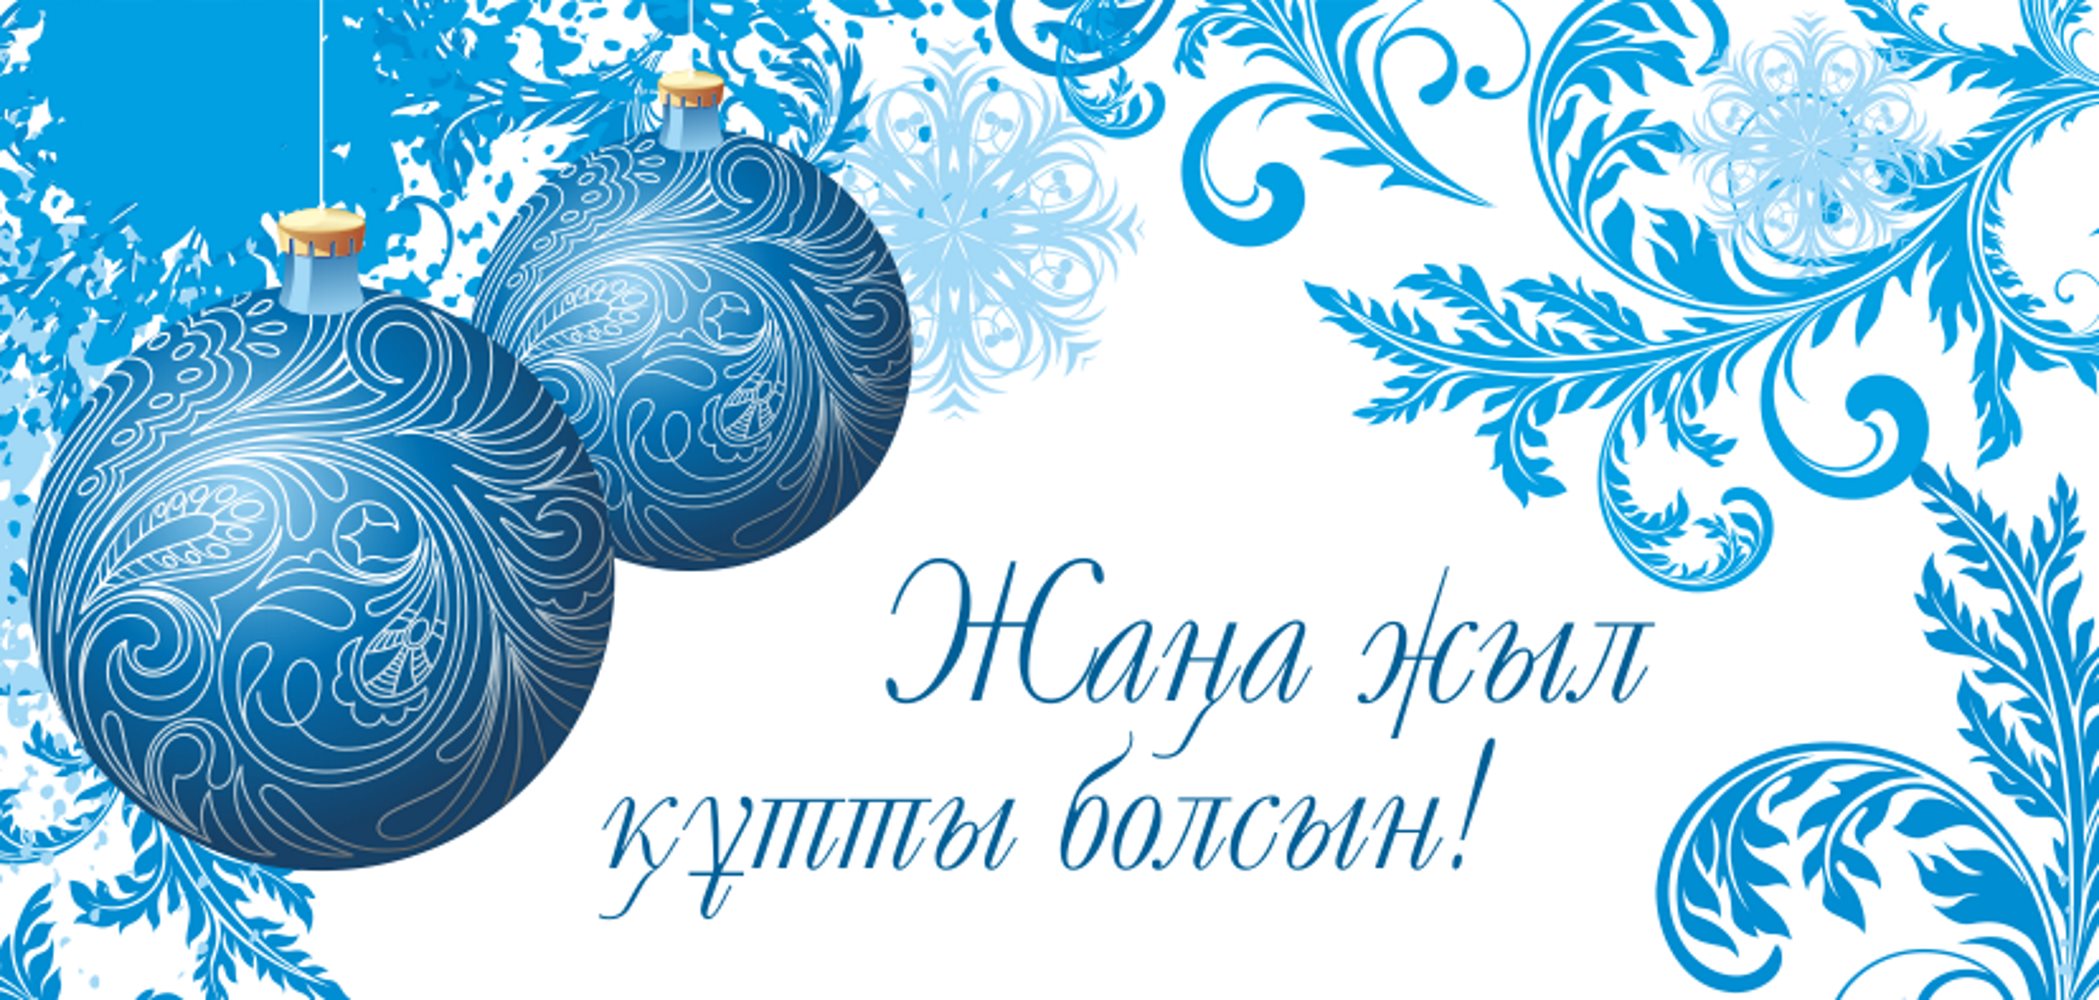 Поздравление Акима района Болата Кулова  жителей района с Новым годом!